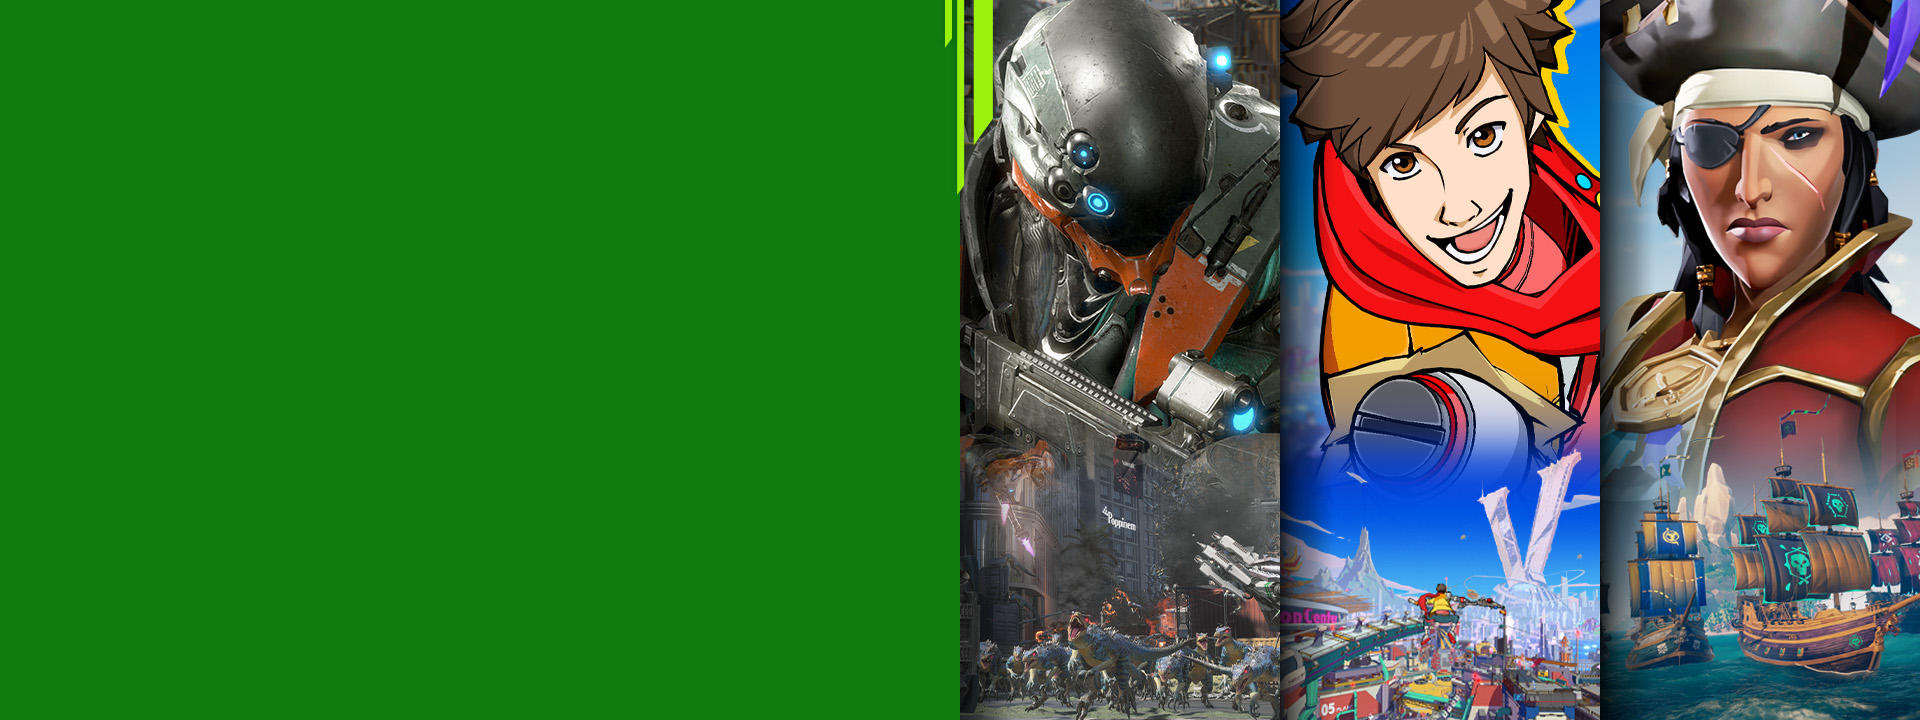 Pohľad spredu na rôzne postavy z hier Exoprimal, Hi-Fi Rush a Sea of Thieves pre Xbox.